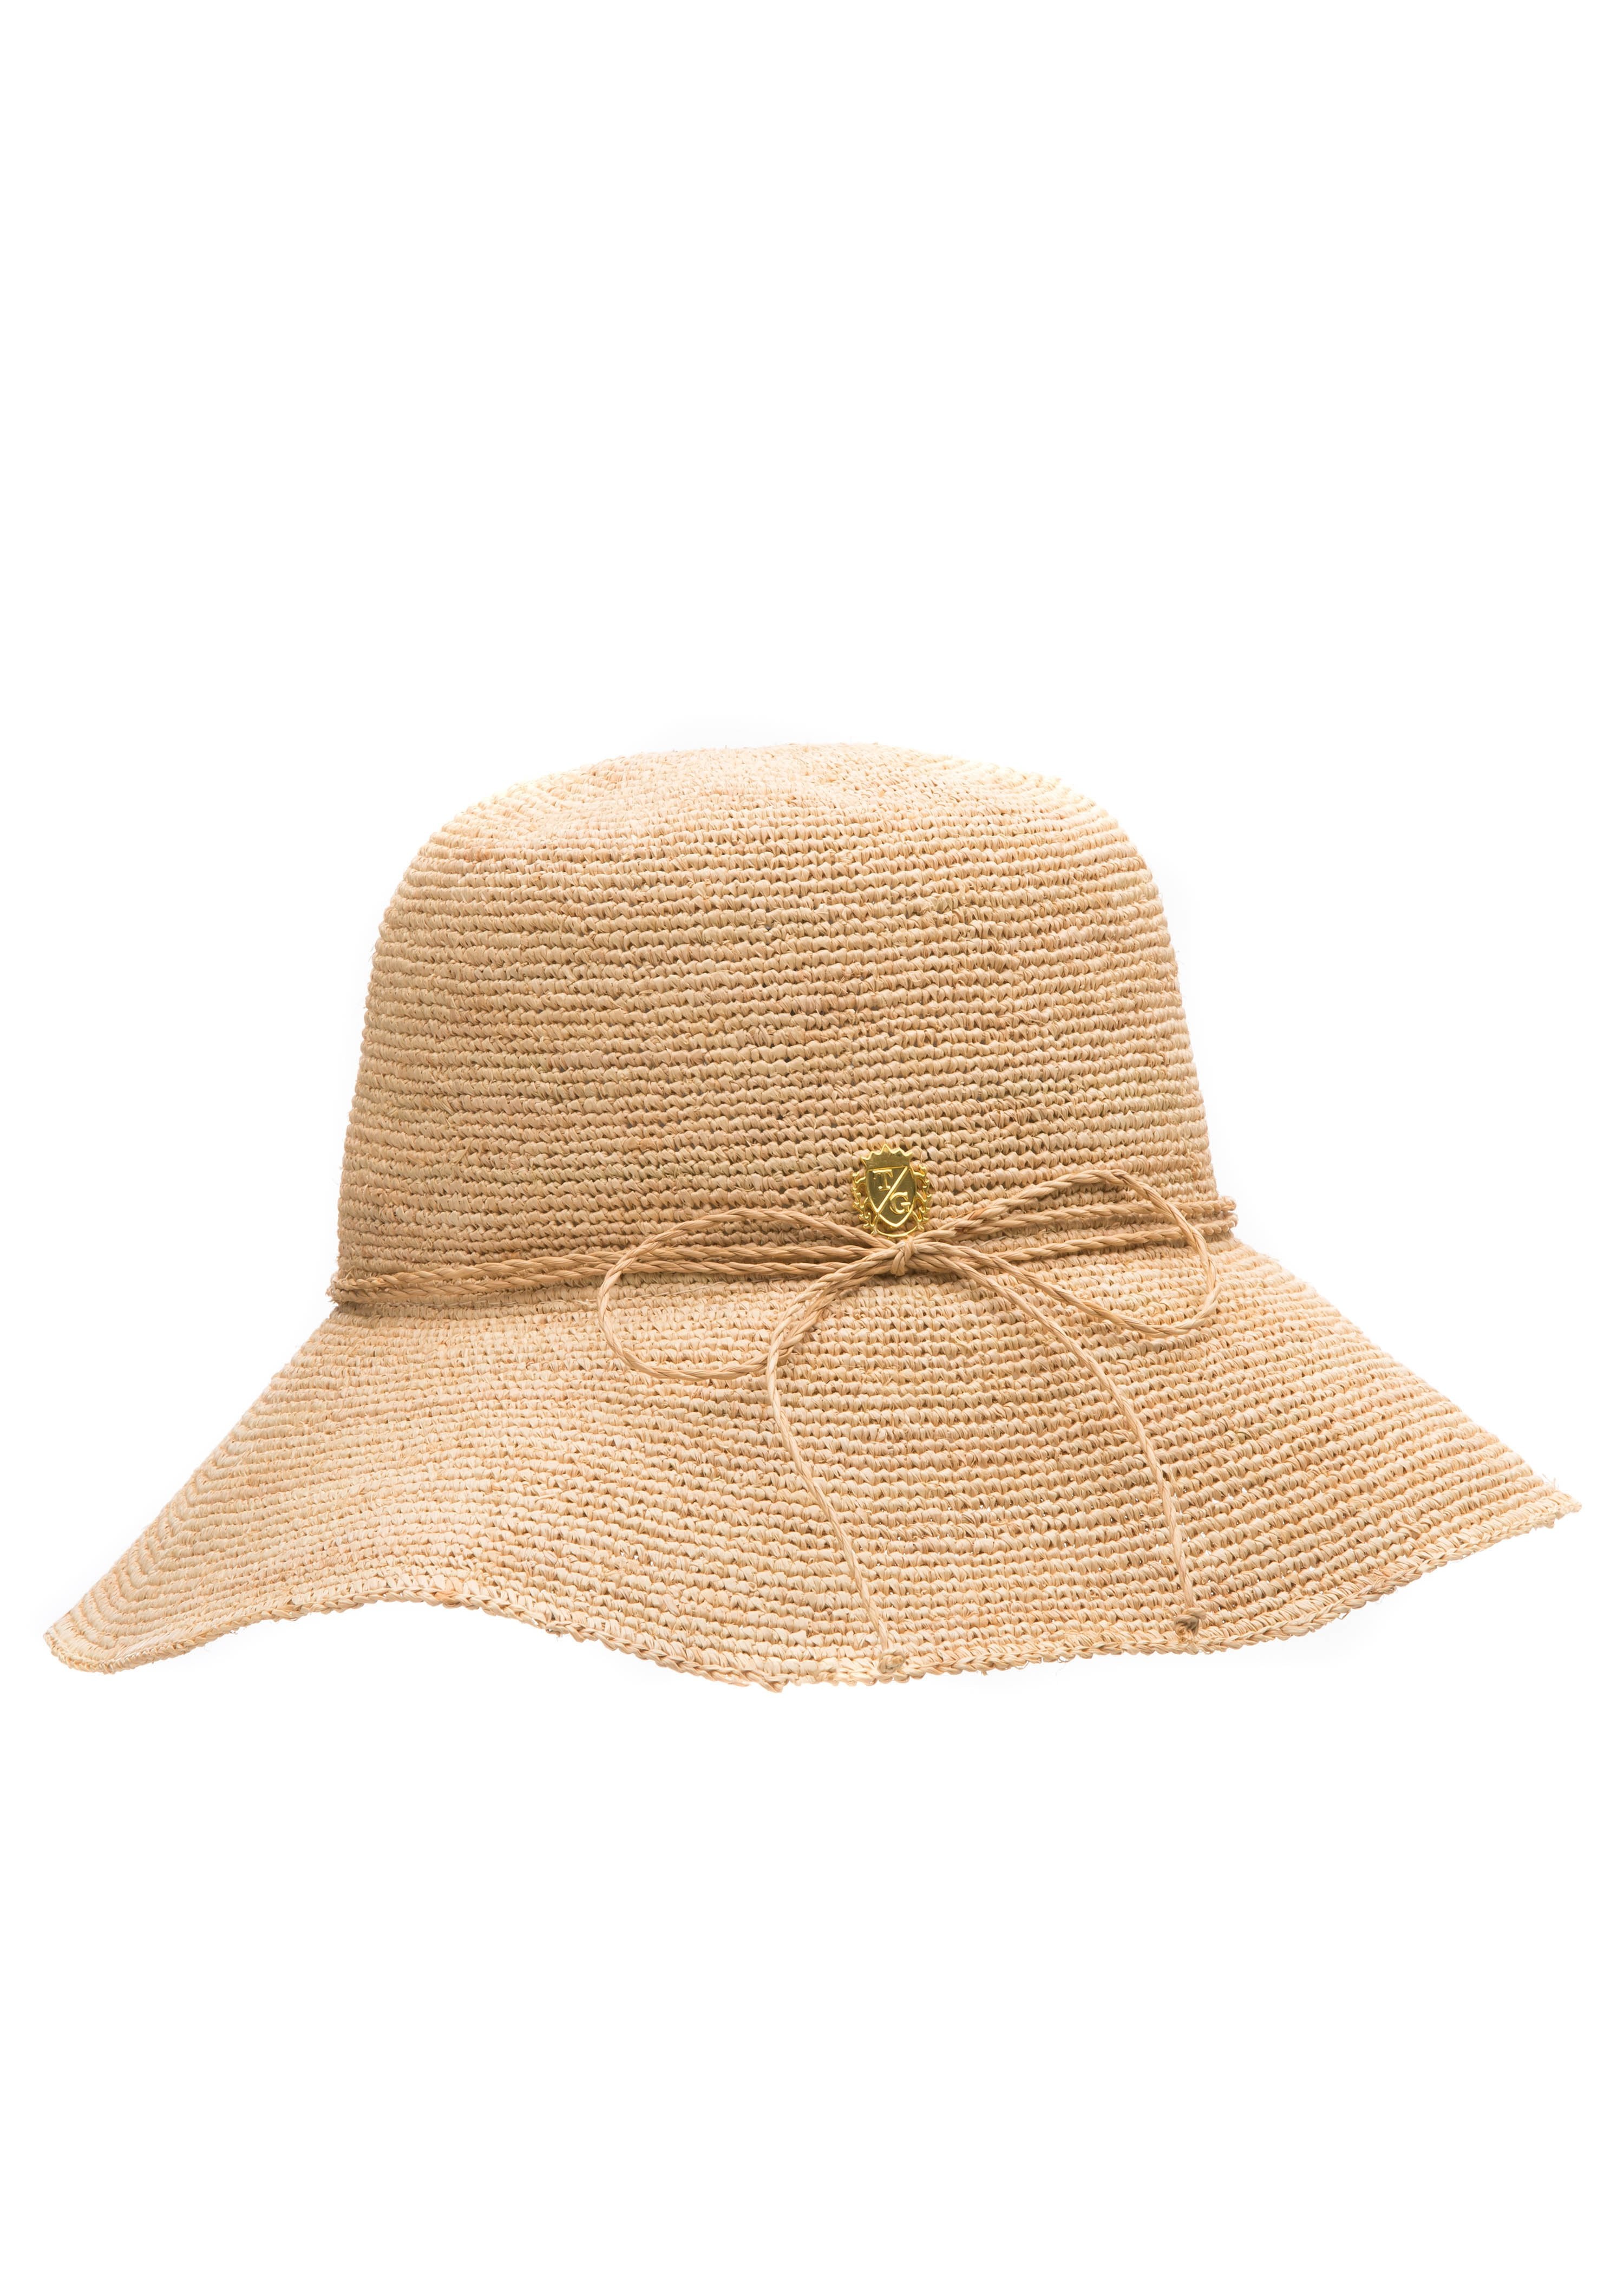 Isadora Raffia Bucket Hat with Natural Trim